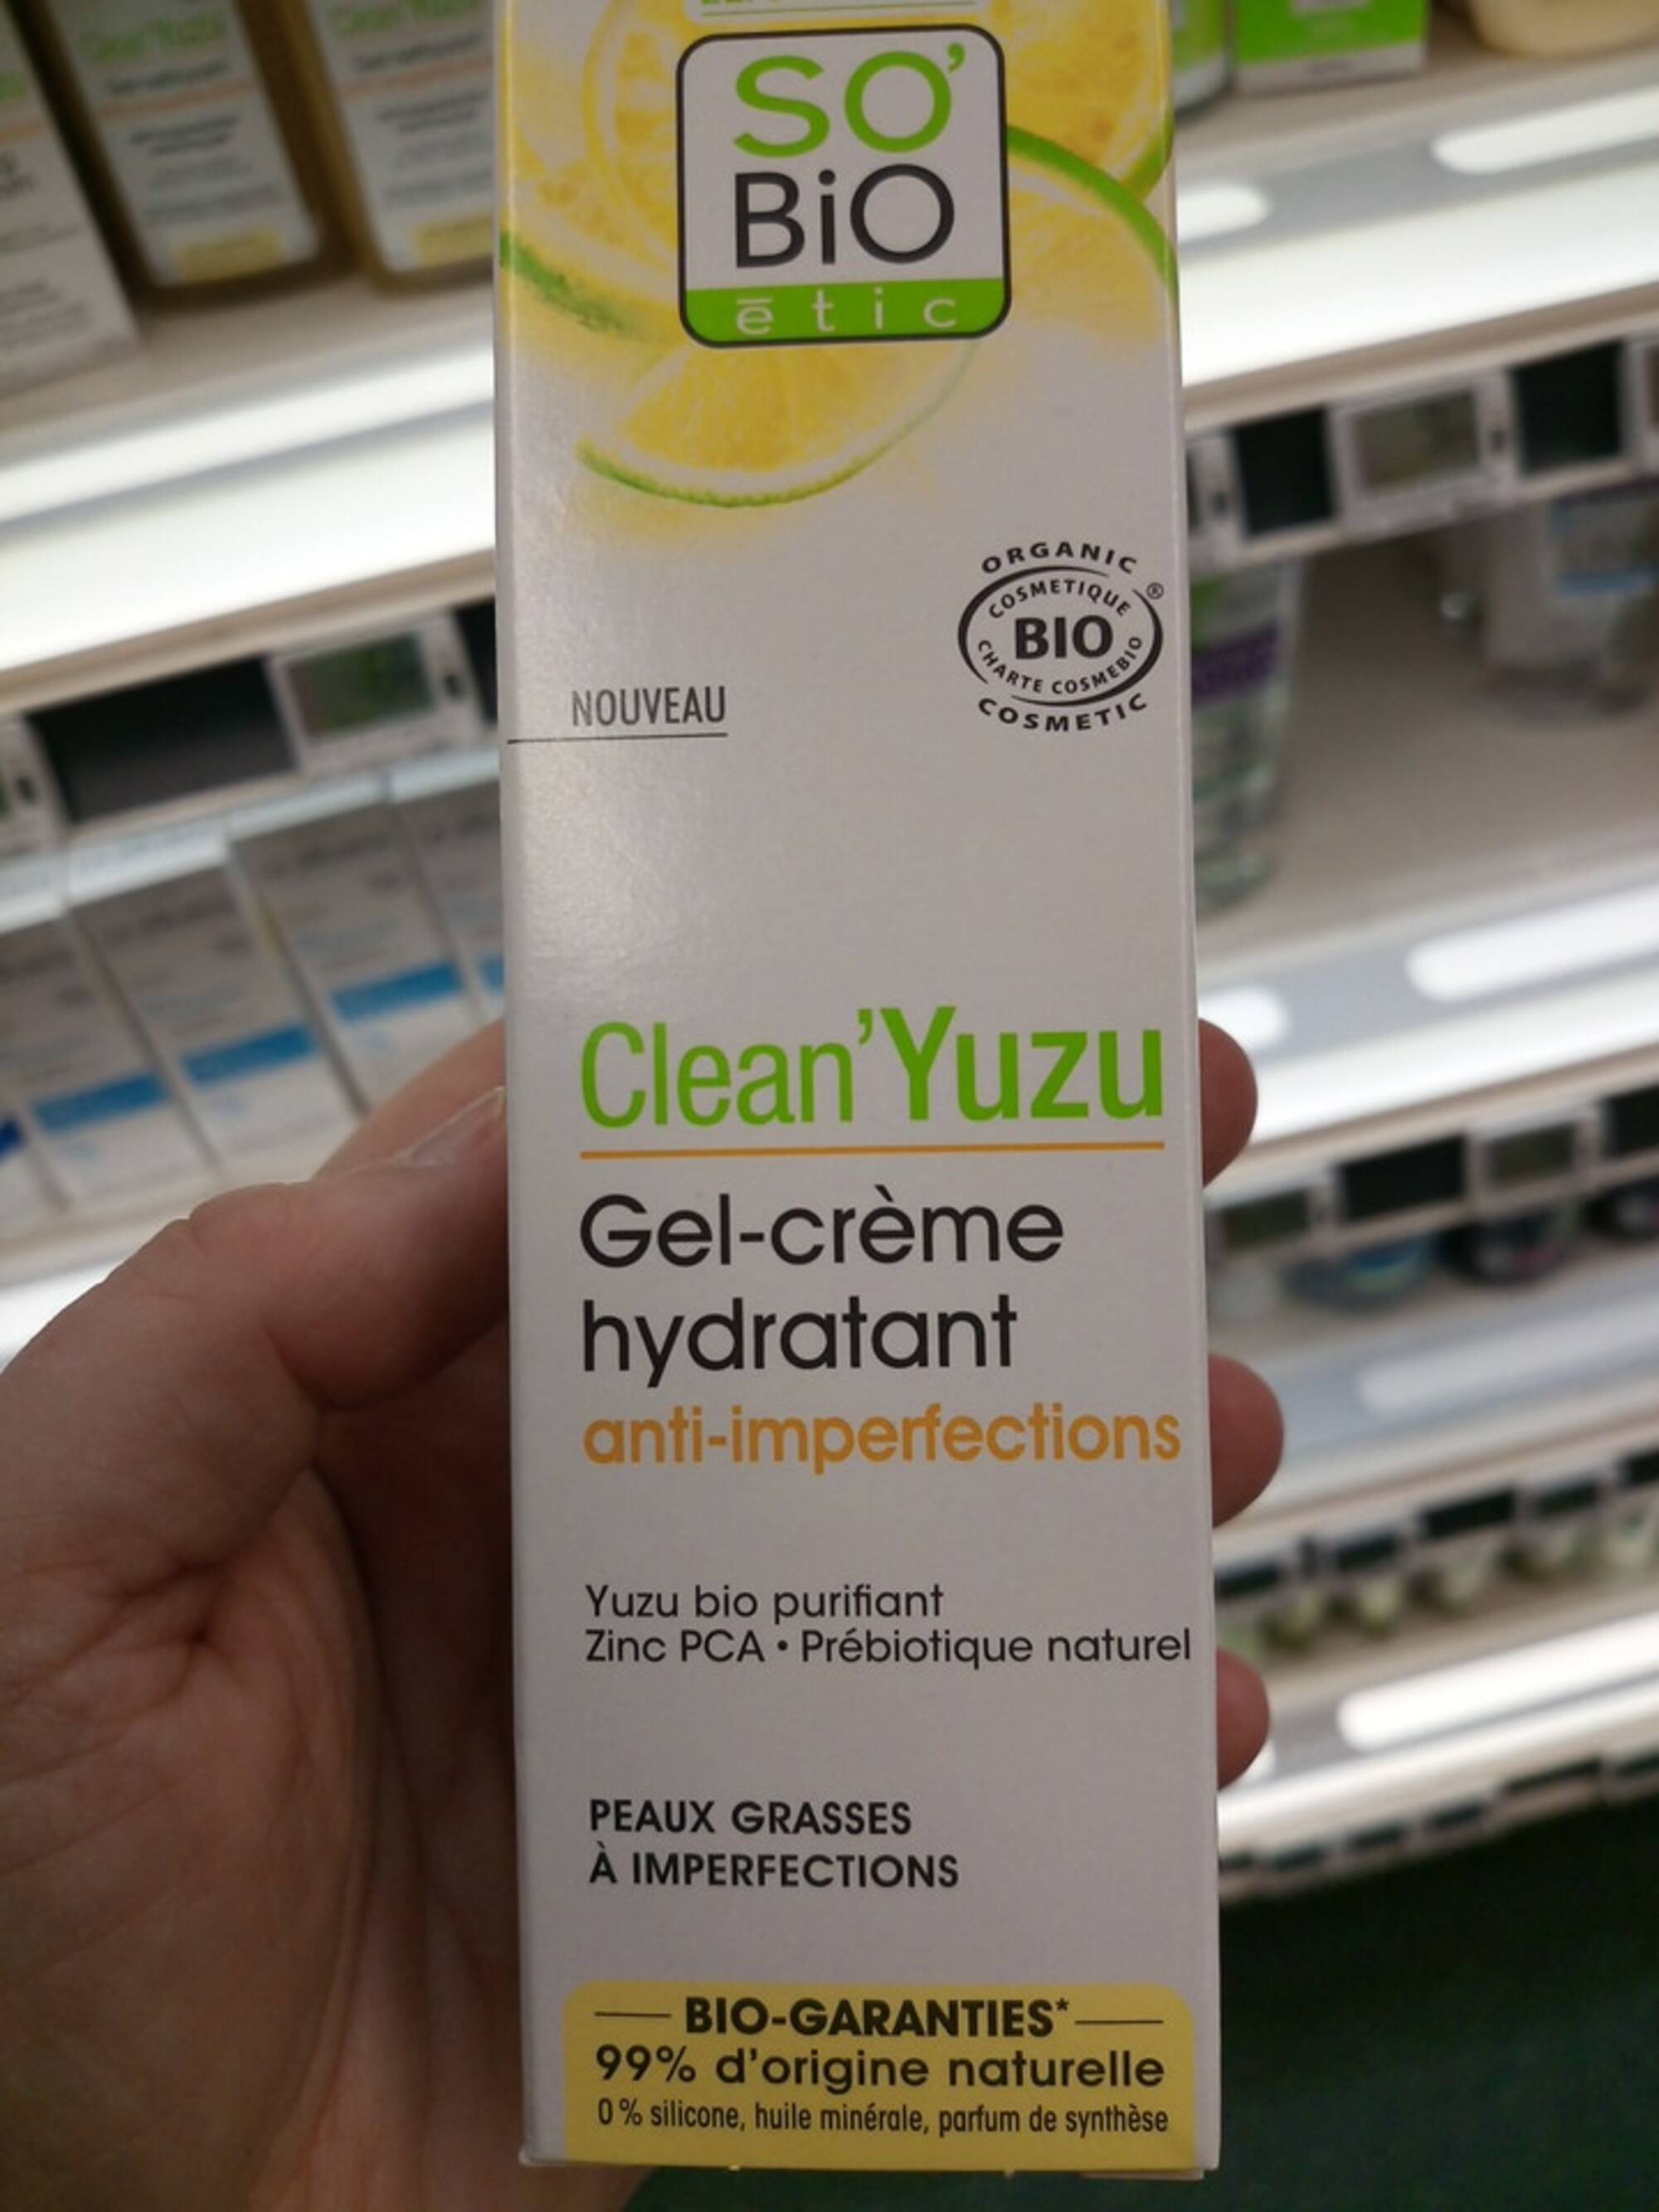 SO'BIO ÉTIC - Clean'Yuzu - Gel-crème hydrantant